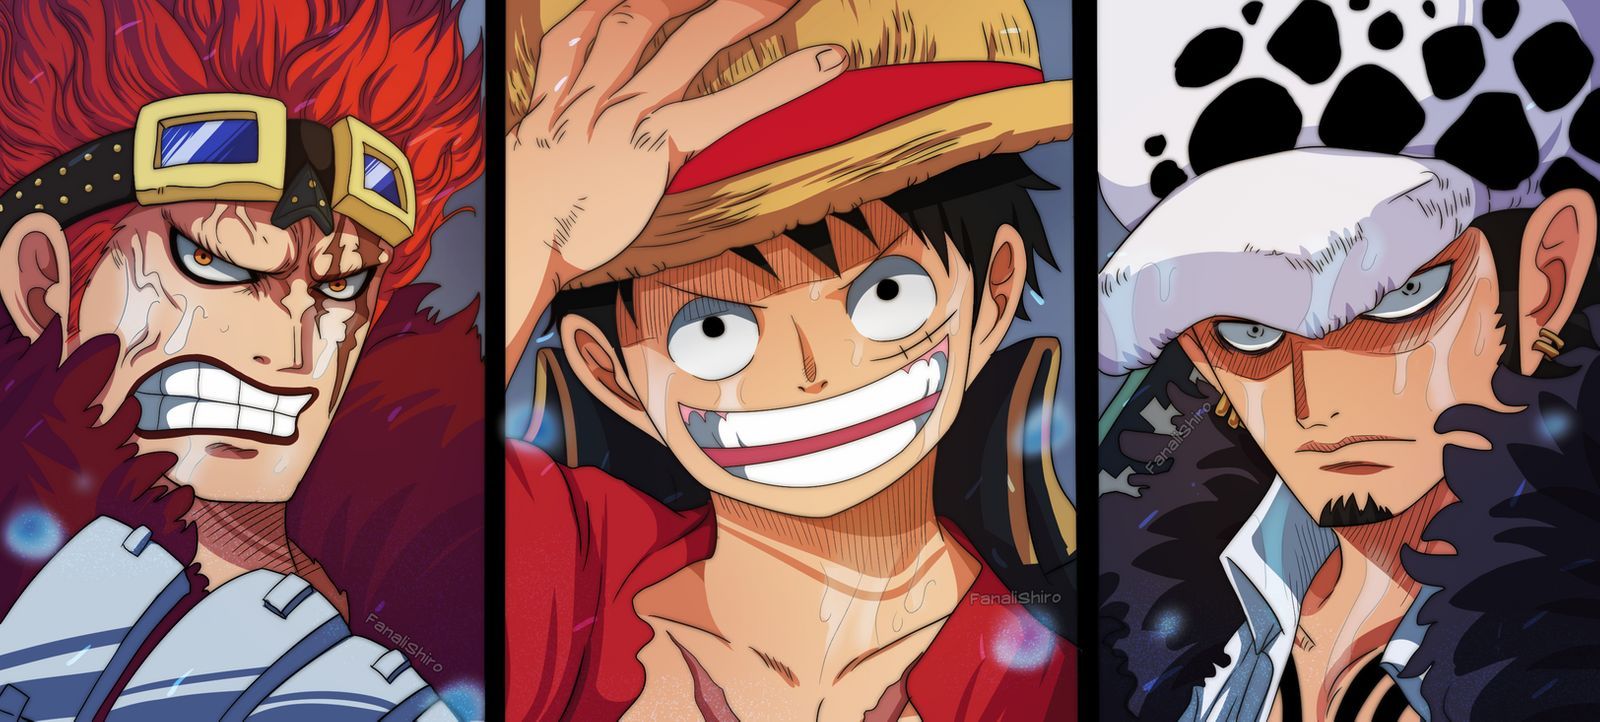 Manga One Piece Chapter 976 Spoiler Dan Tanggal Rilisnya